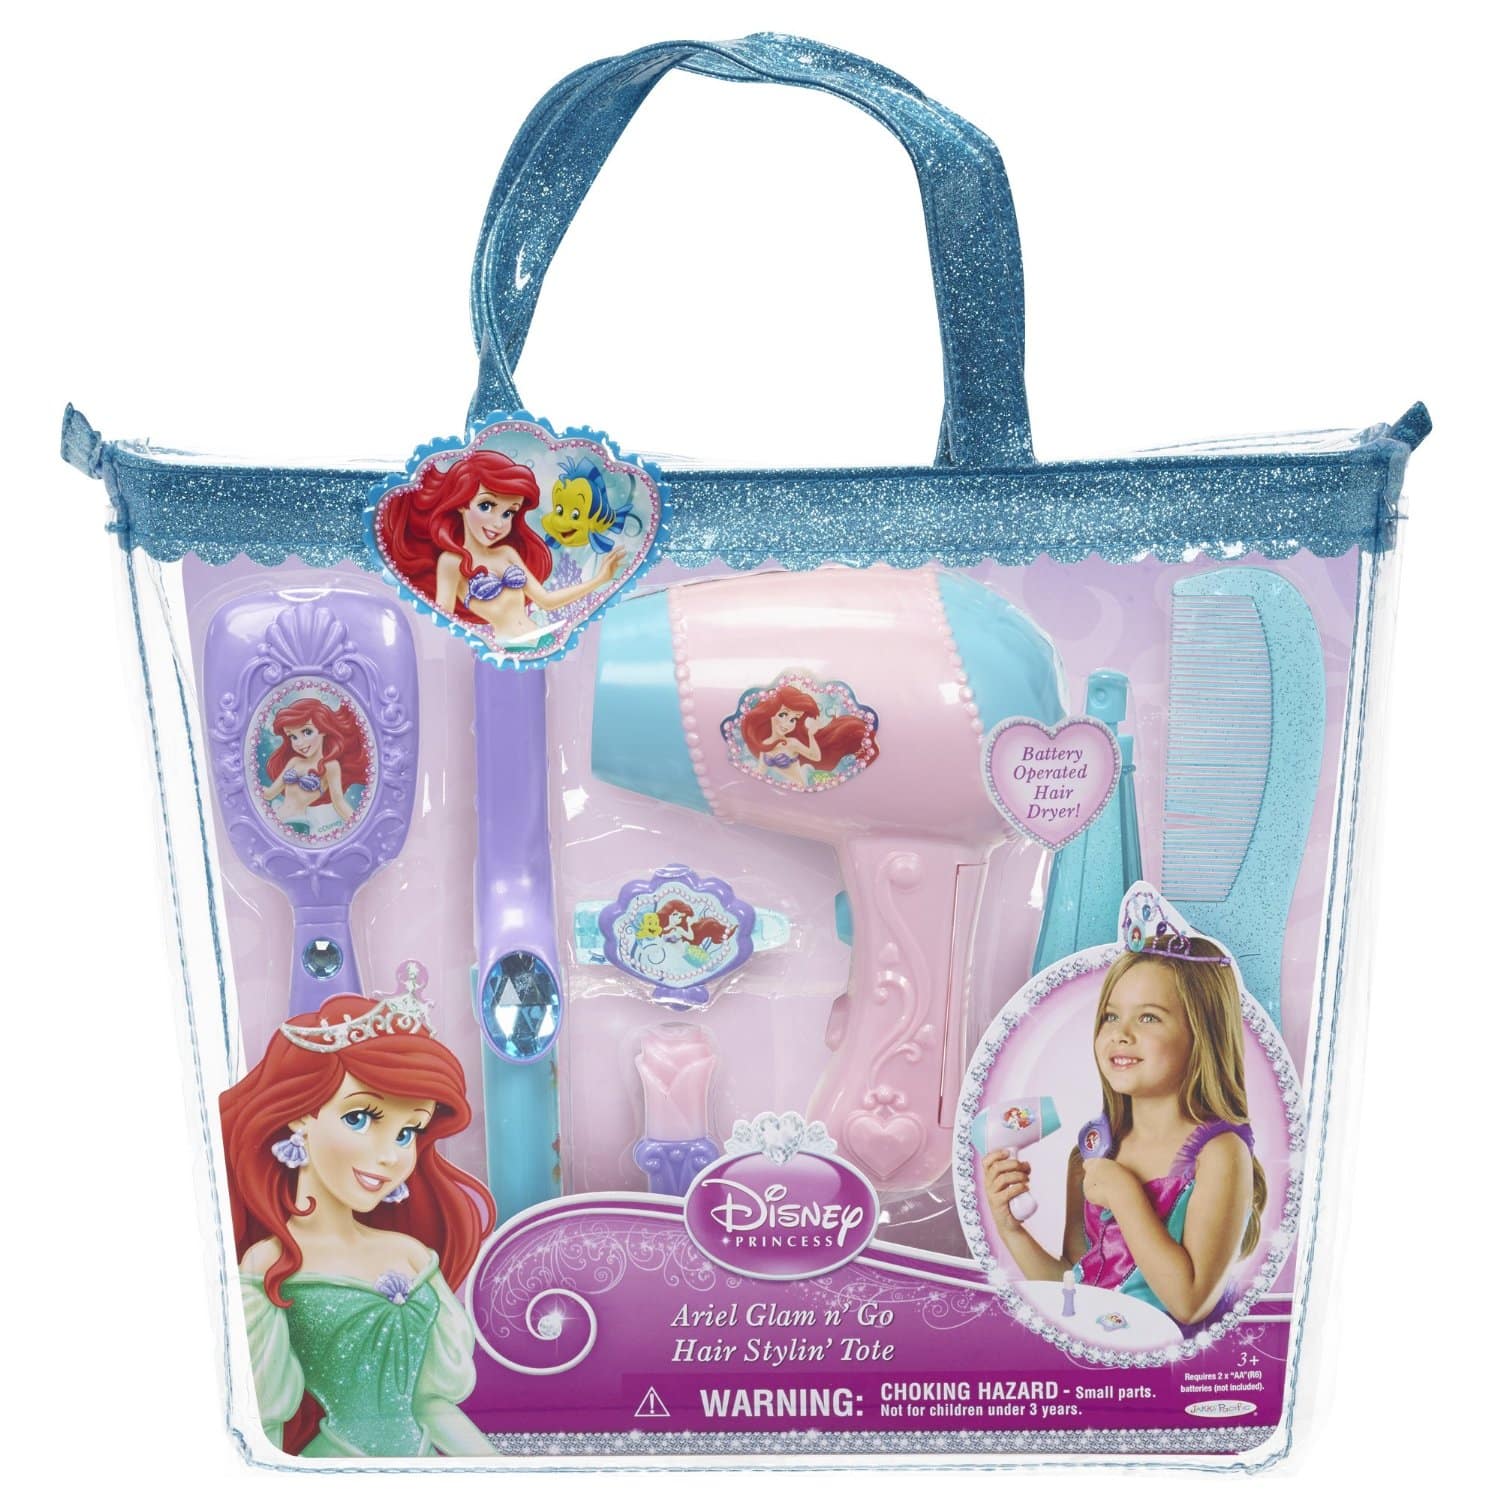 DEAL ALERT: Save up to 72% Off Select Disney Princess Toys